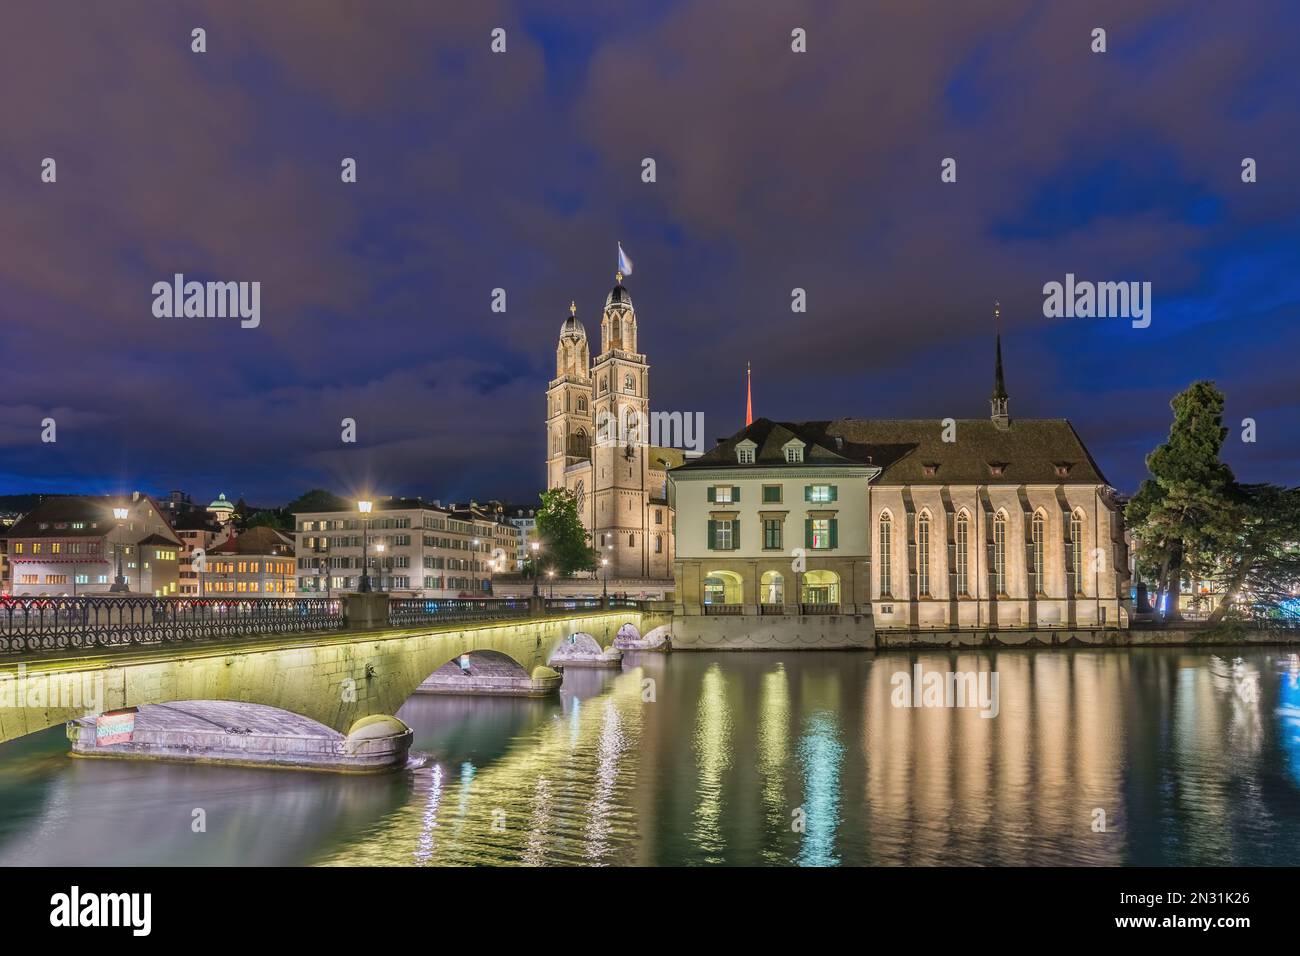 Zurigo Svizzera, skyline notturno della città presso la chiesa Grossmunster e il ponte Munster Foto Stock